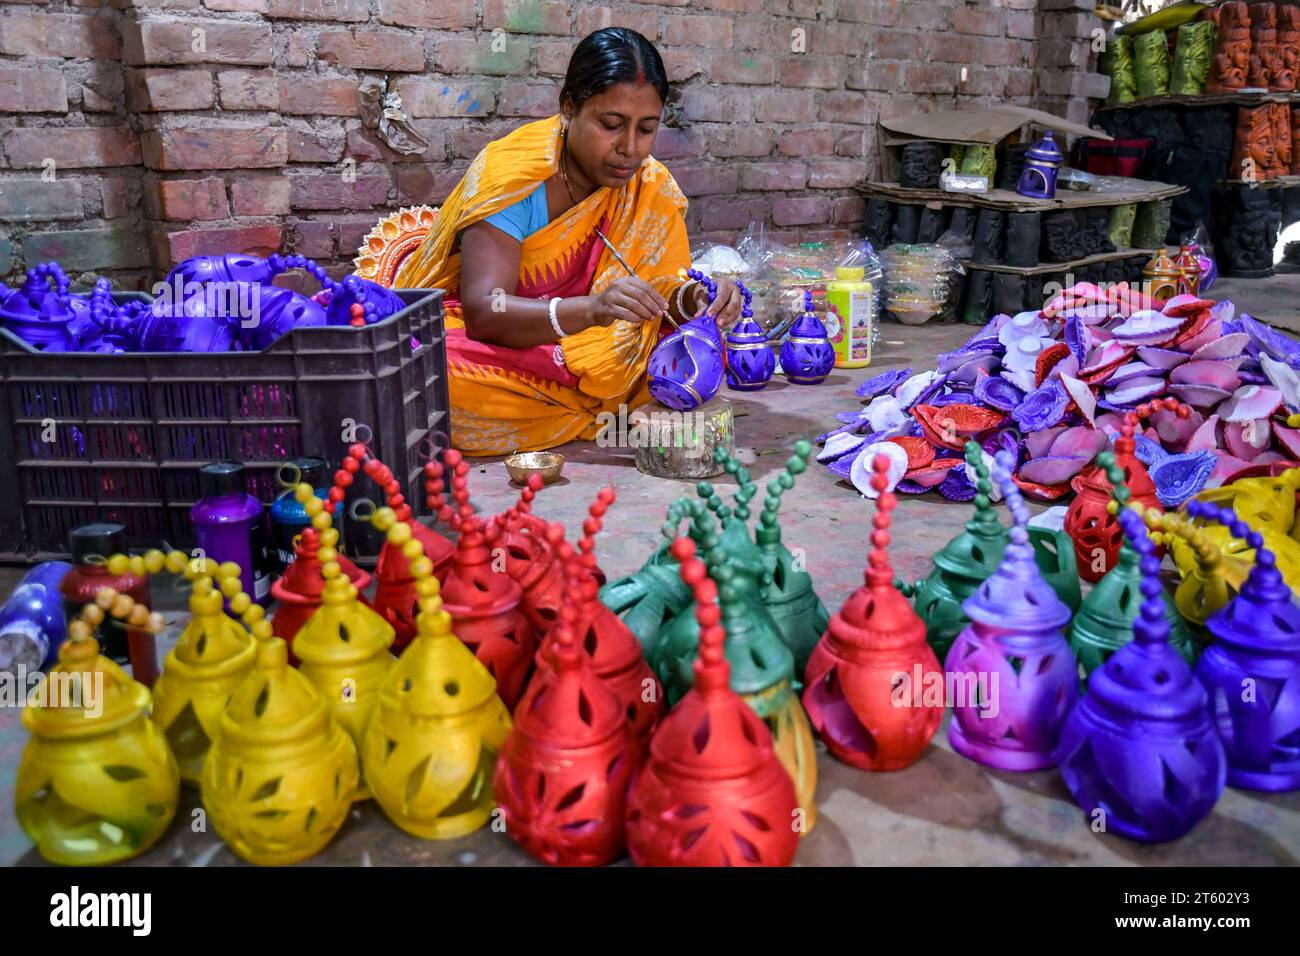 Ein Arbeiter färbt eine Erdlampe in dem Töpferdorf Chaltaberia, rund 40 km vor Kalkutta in Westbengalen. Das ganze Dorf ist im vollen Rhythmus der irdenen Lampen- und Idol-Produktion vor dem Diwali-Festival in Indien. Erdlampen werden in allen indischen Städten verkauft, wie Kalkutta, Delhi, Mumbai, Hyderabad, Gujarat, Assam, Patna und Rajasthan, besonders während der Festivalsaison. Sogar Erdlampen werden vor den Diwali-Feiern nach außerhalb Indiens exportiert. Stockfoto